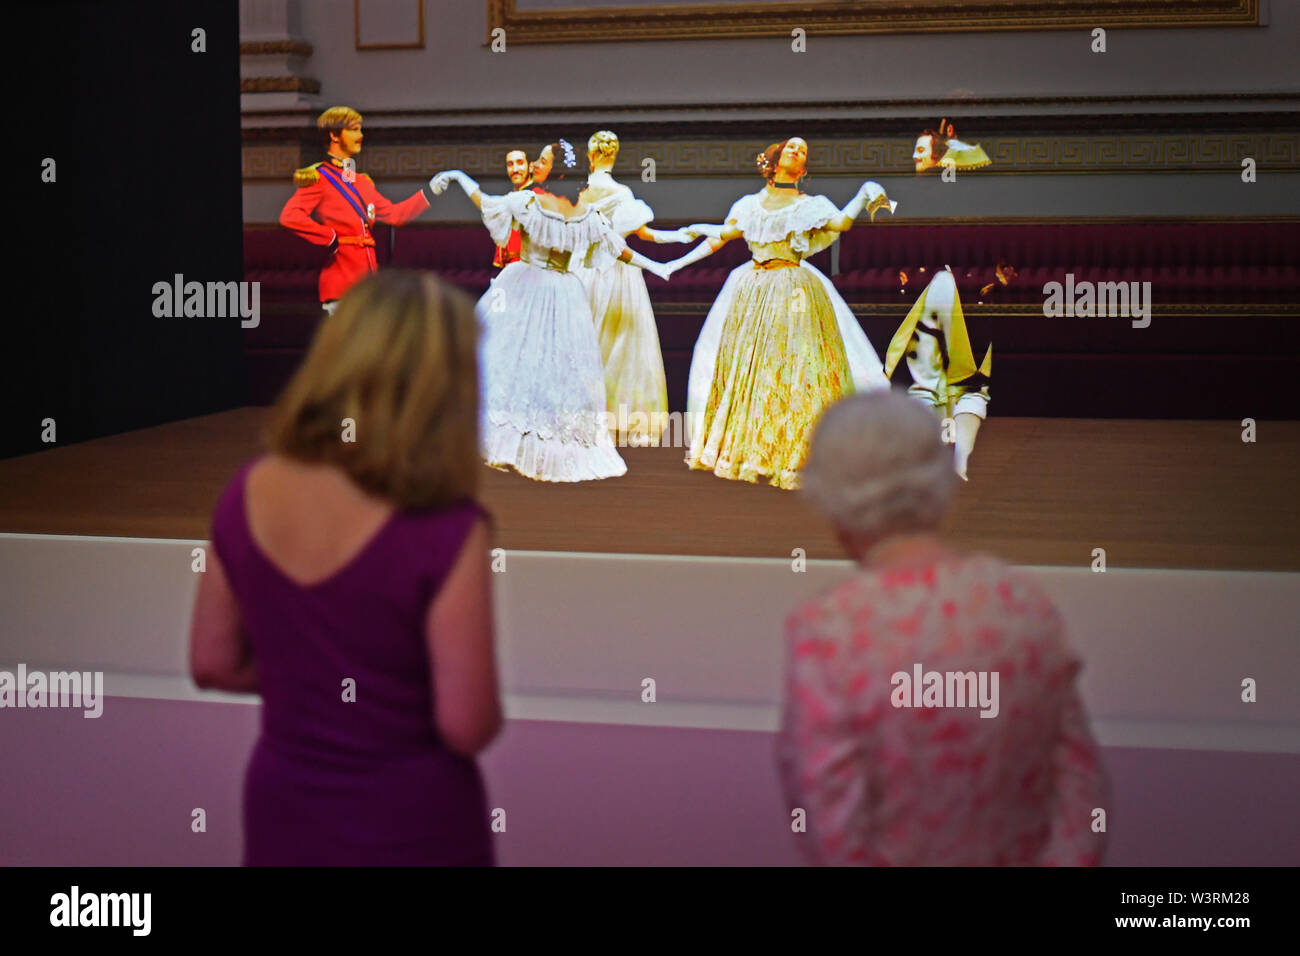 La Reina Isabel II mira una técnica de ilusión victoriana conocida como el fantasma de Pepper de un vals bailado en la bola de Crimea de 1856, en el salón de baile del Palacio de Buckingham, Como parte de la exposición para conmemorar el 200th aniversario del nacimiento de la Reina Victoria para la inauguración de verano del Palacio de Buckingham, Londres. Foto de stock